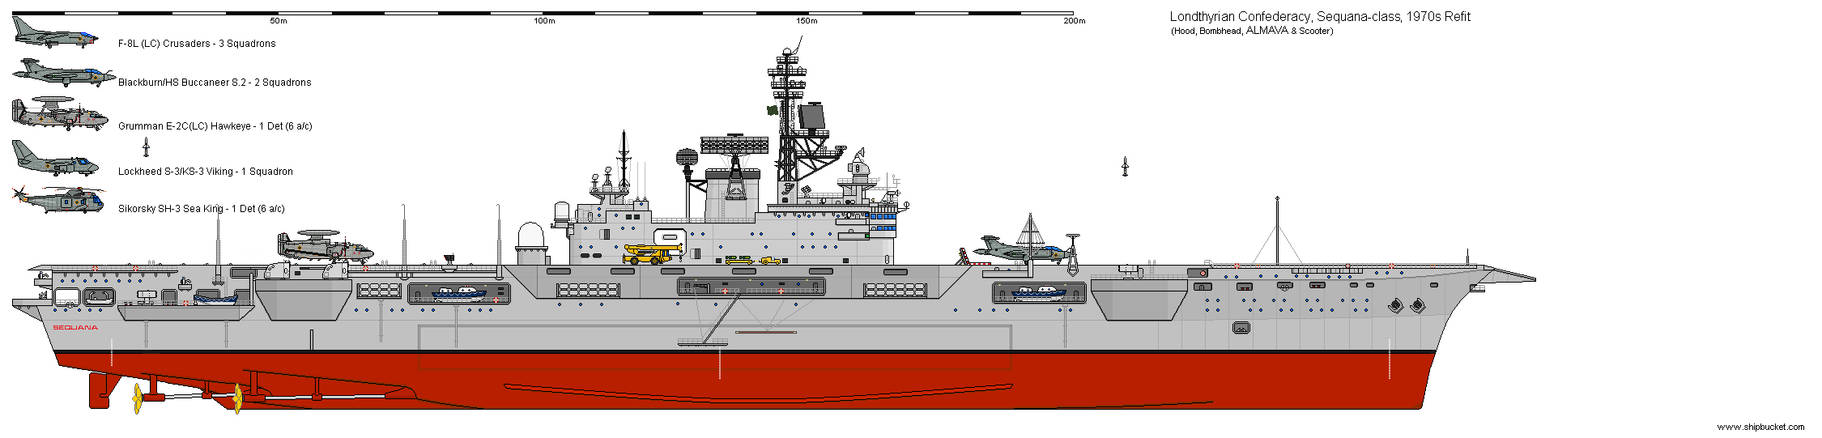 Londthyrian Confederacy - Sequana-class CV